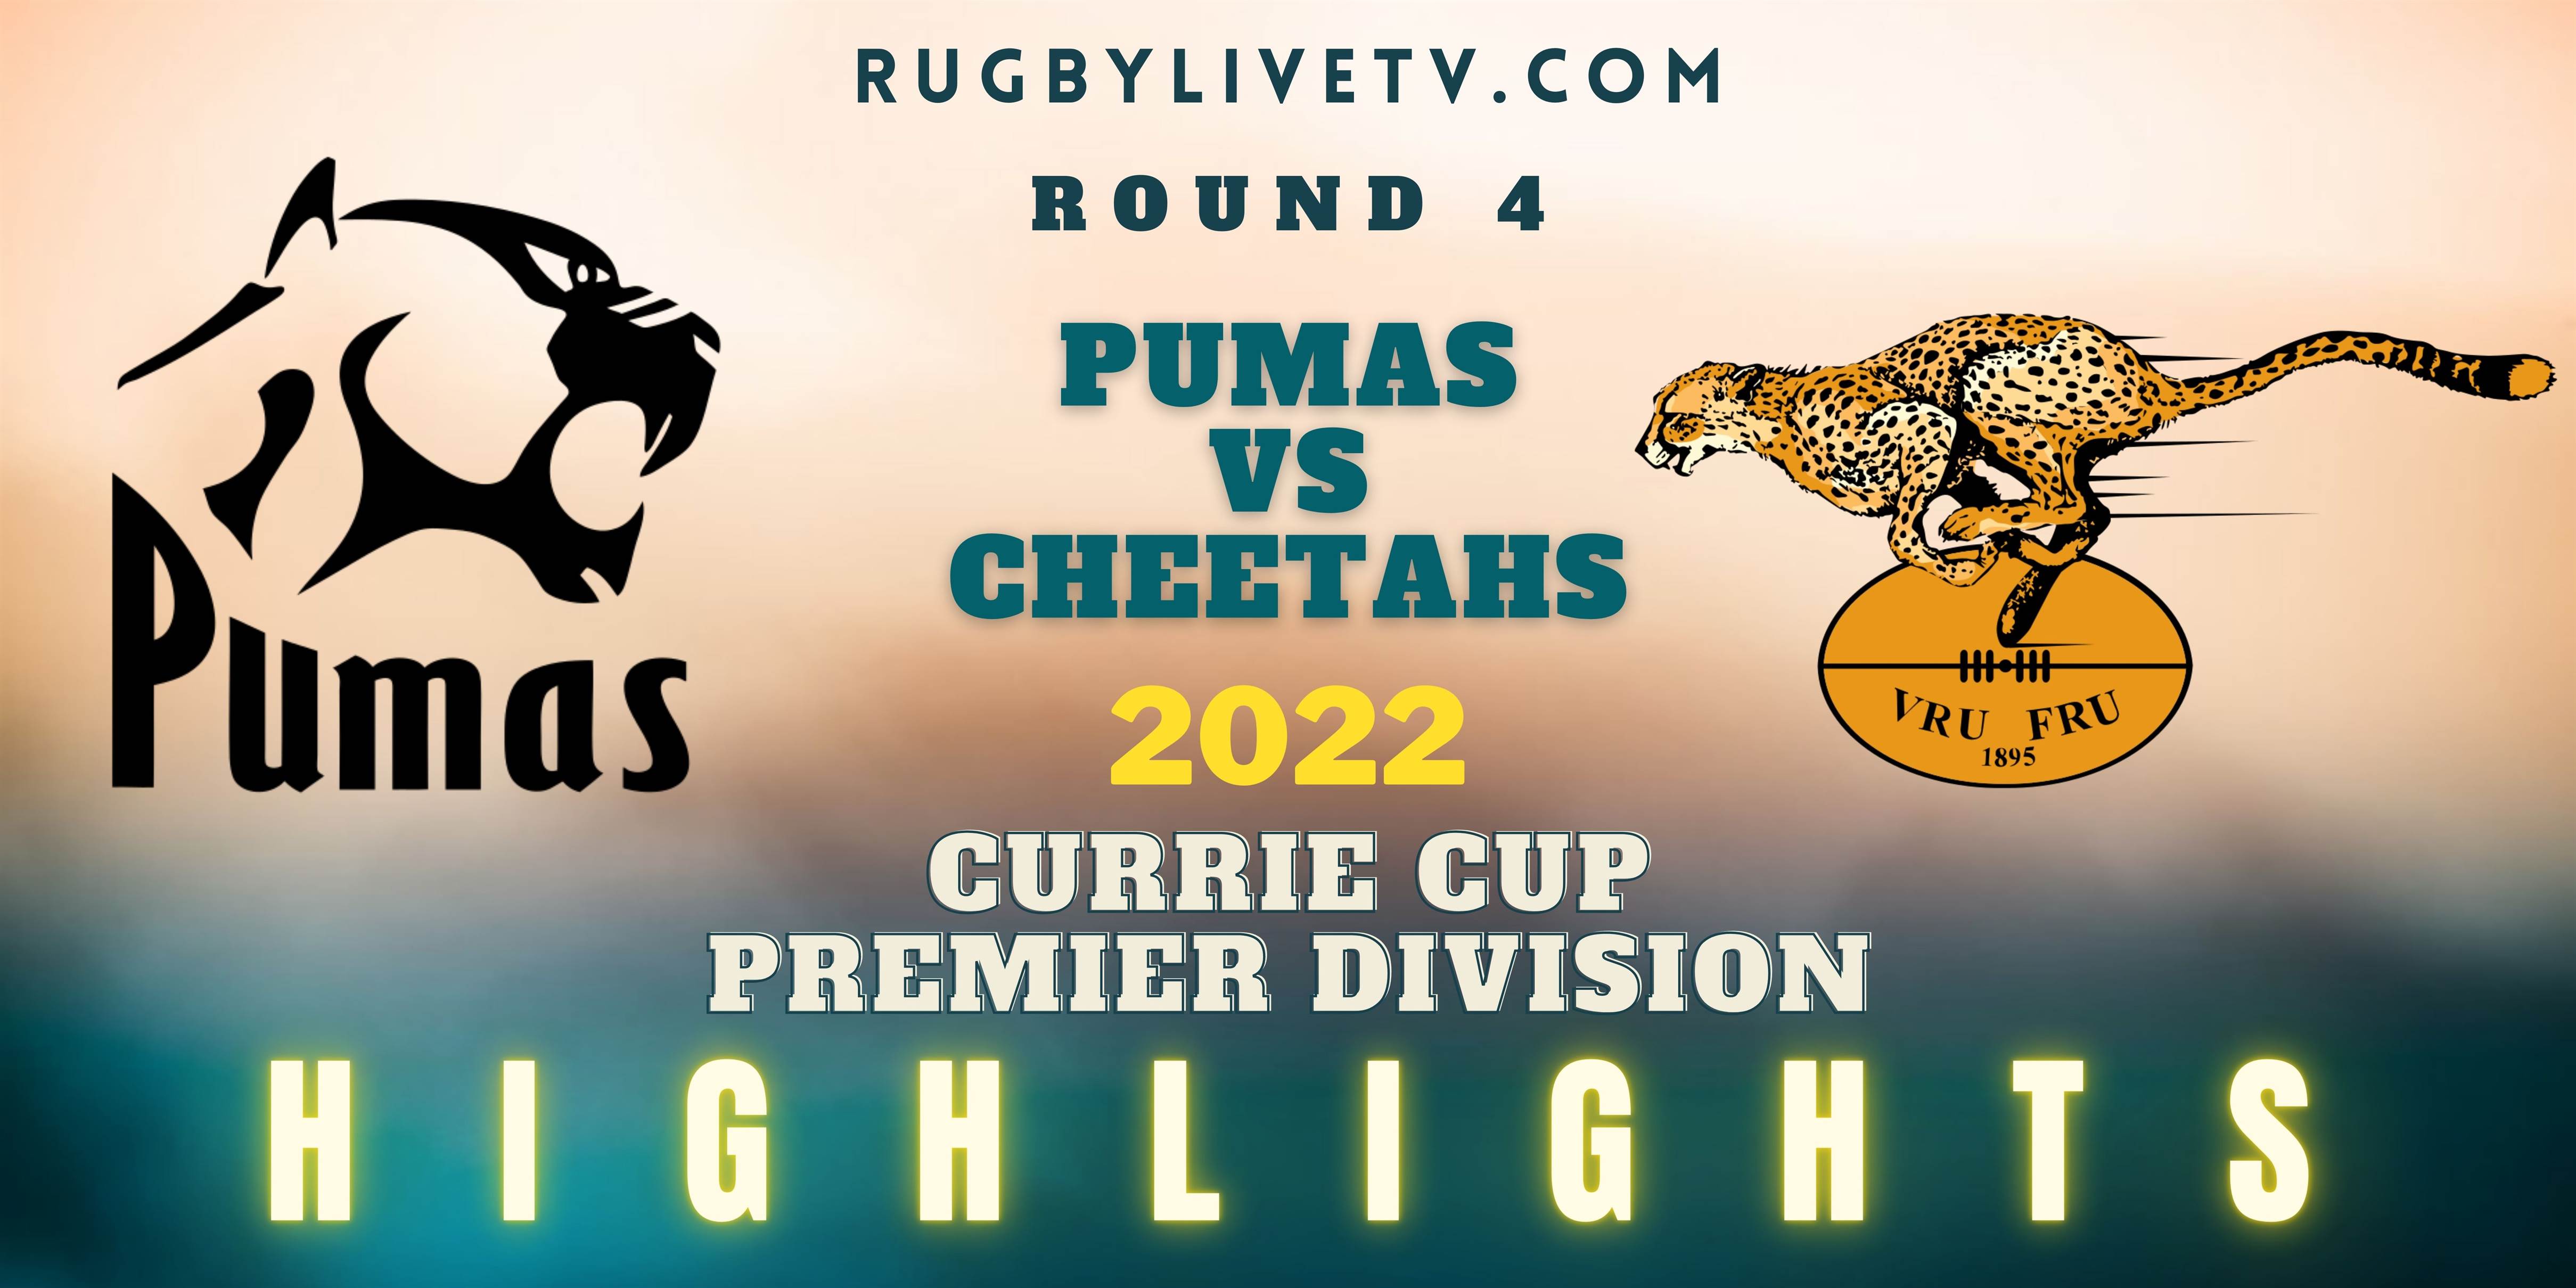 Pumas Vs Cheetahs Currie Cup Highlights 2022 Rd 4